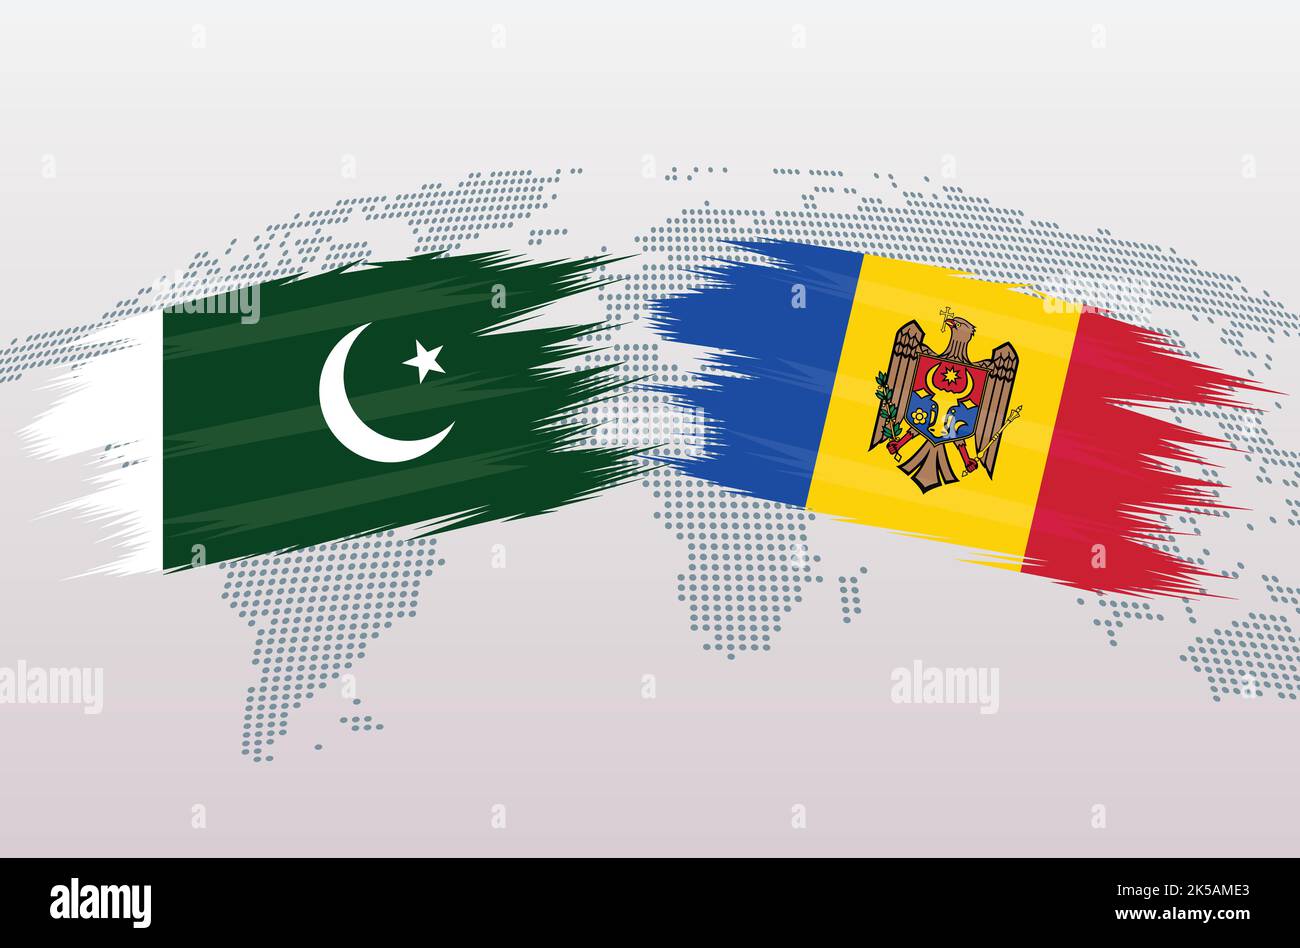 Drapeau du Pakistan contre la Moldavie. Drapeau de la République islamique du Pakistan contre la Moldavie, isolé sur fond gris de la carte du monde. Illustration vectorielle. Illustration de Vecteur